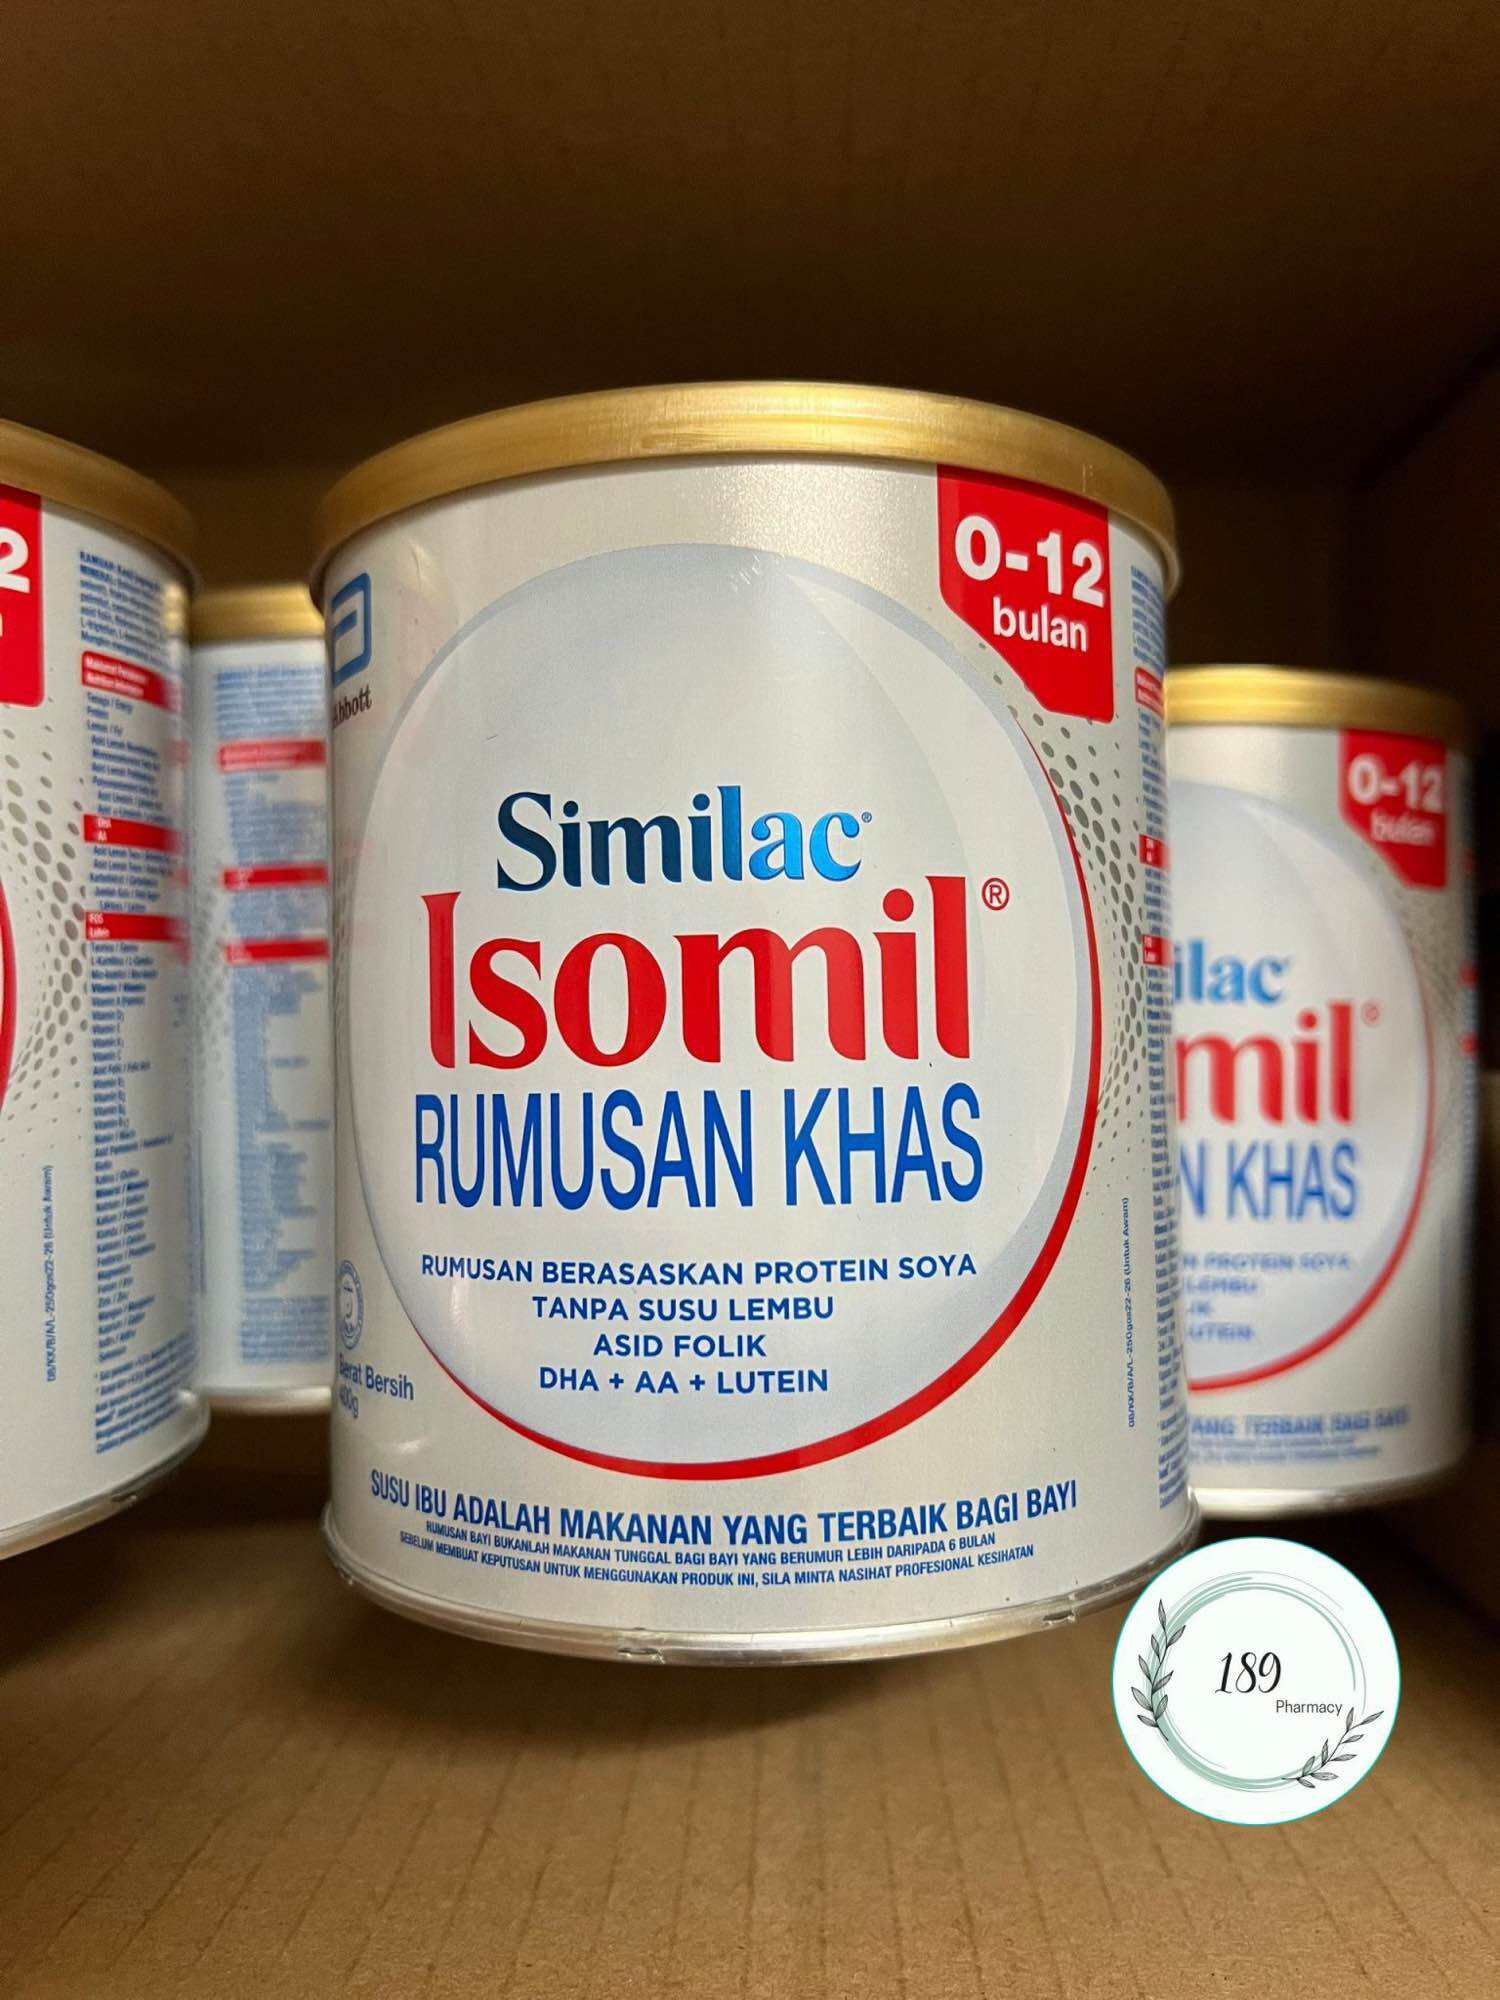 Sữa Similac Isomil 0-12 tháng tuổi - 400g - Date mới nhất